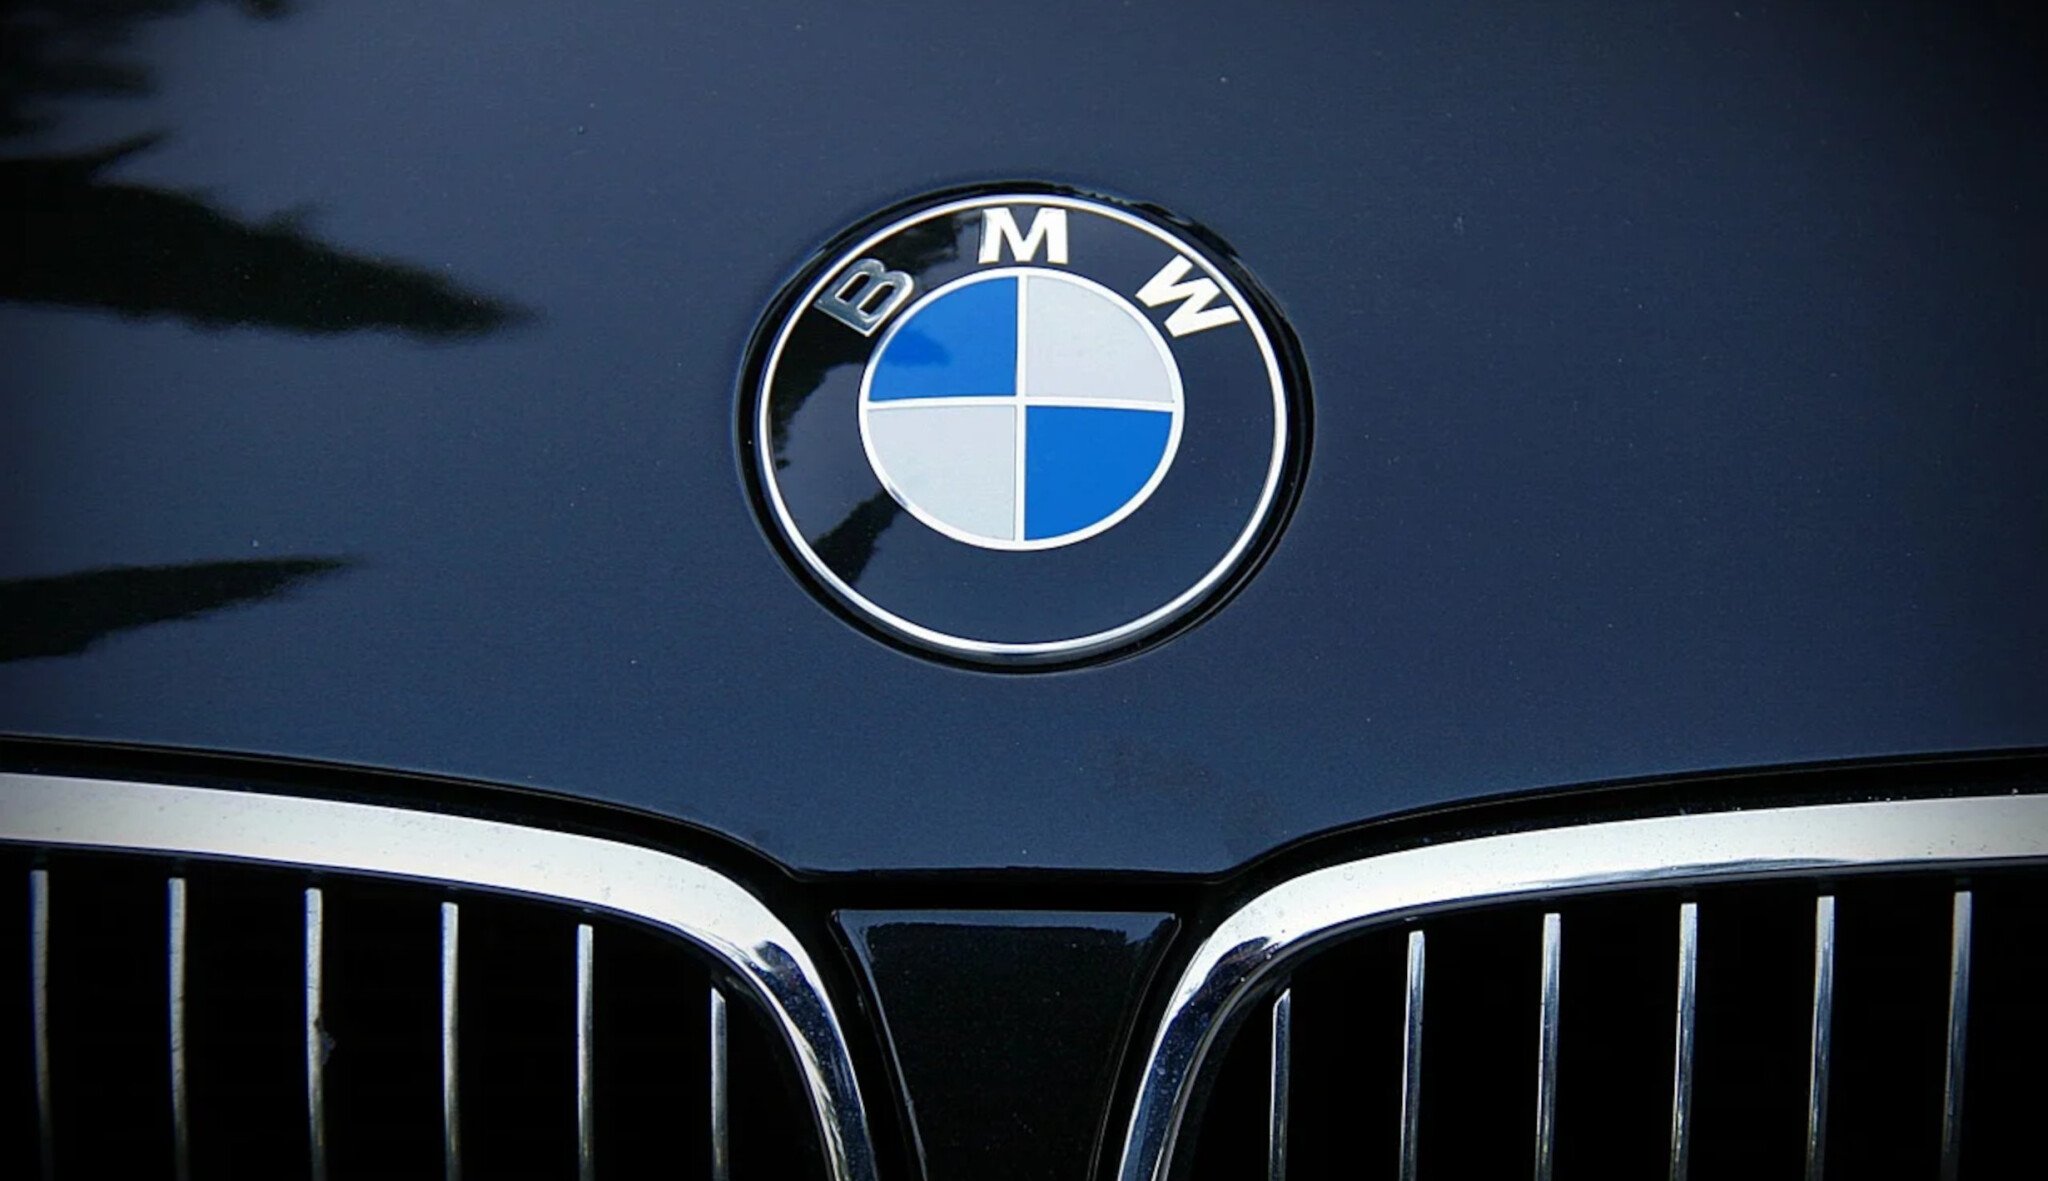 Omezená výroba a vysoká cena automobilů. BMW zvýšila meziročně zisk o 260 procent